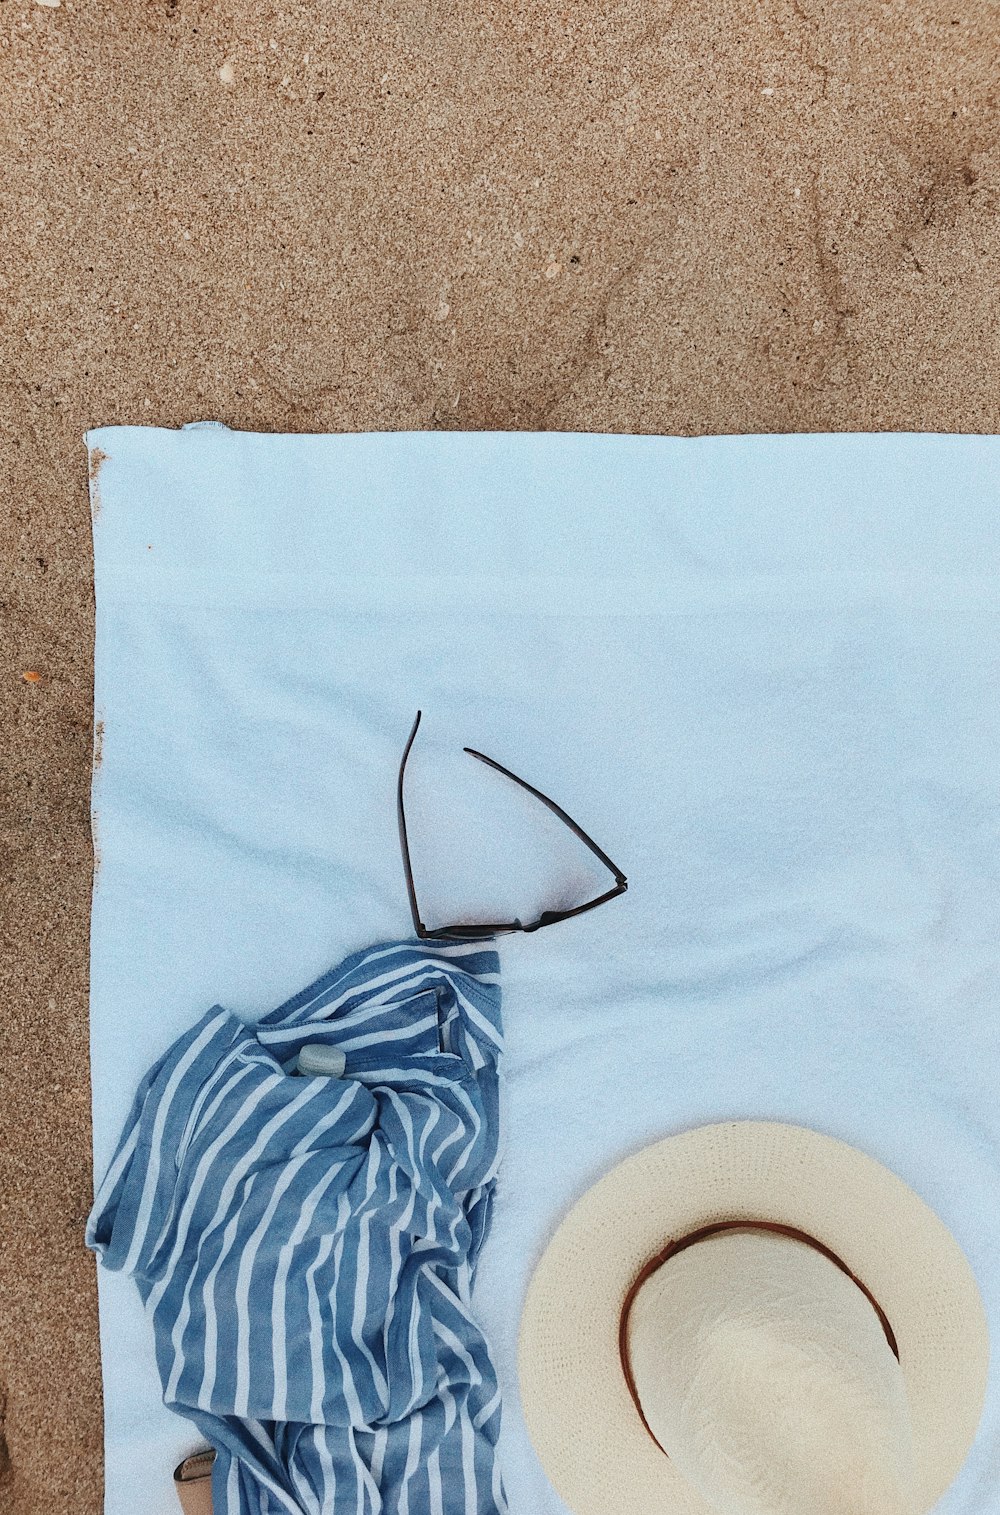 Flay-Lay-Fotografie von Decke, Sommerhut und Sonnenbrille auf Fleece-Handtuch